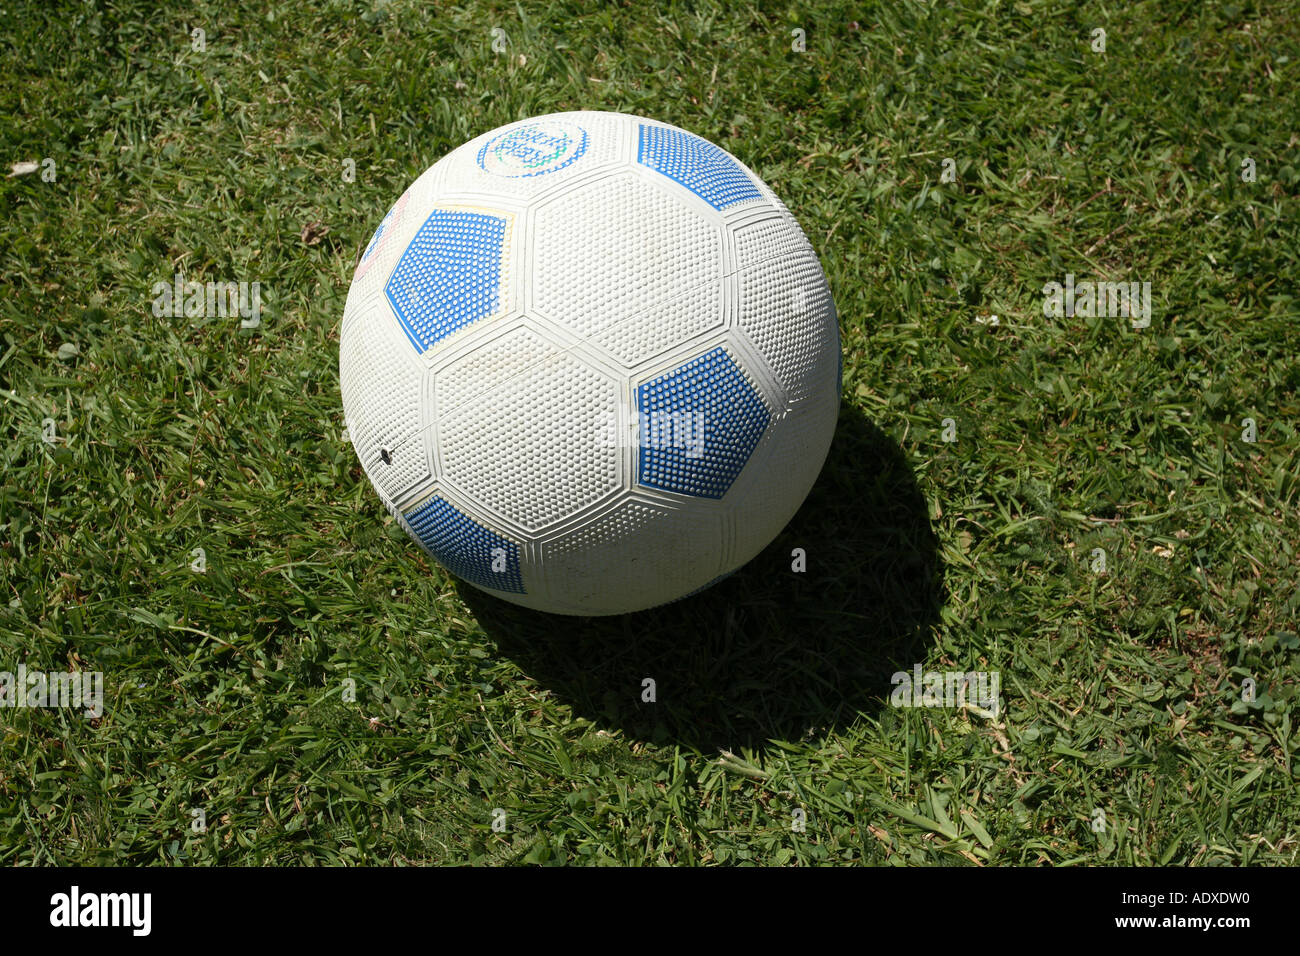 Kautschuk-Fußball auf dem Rasen Stockfoto